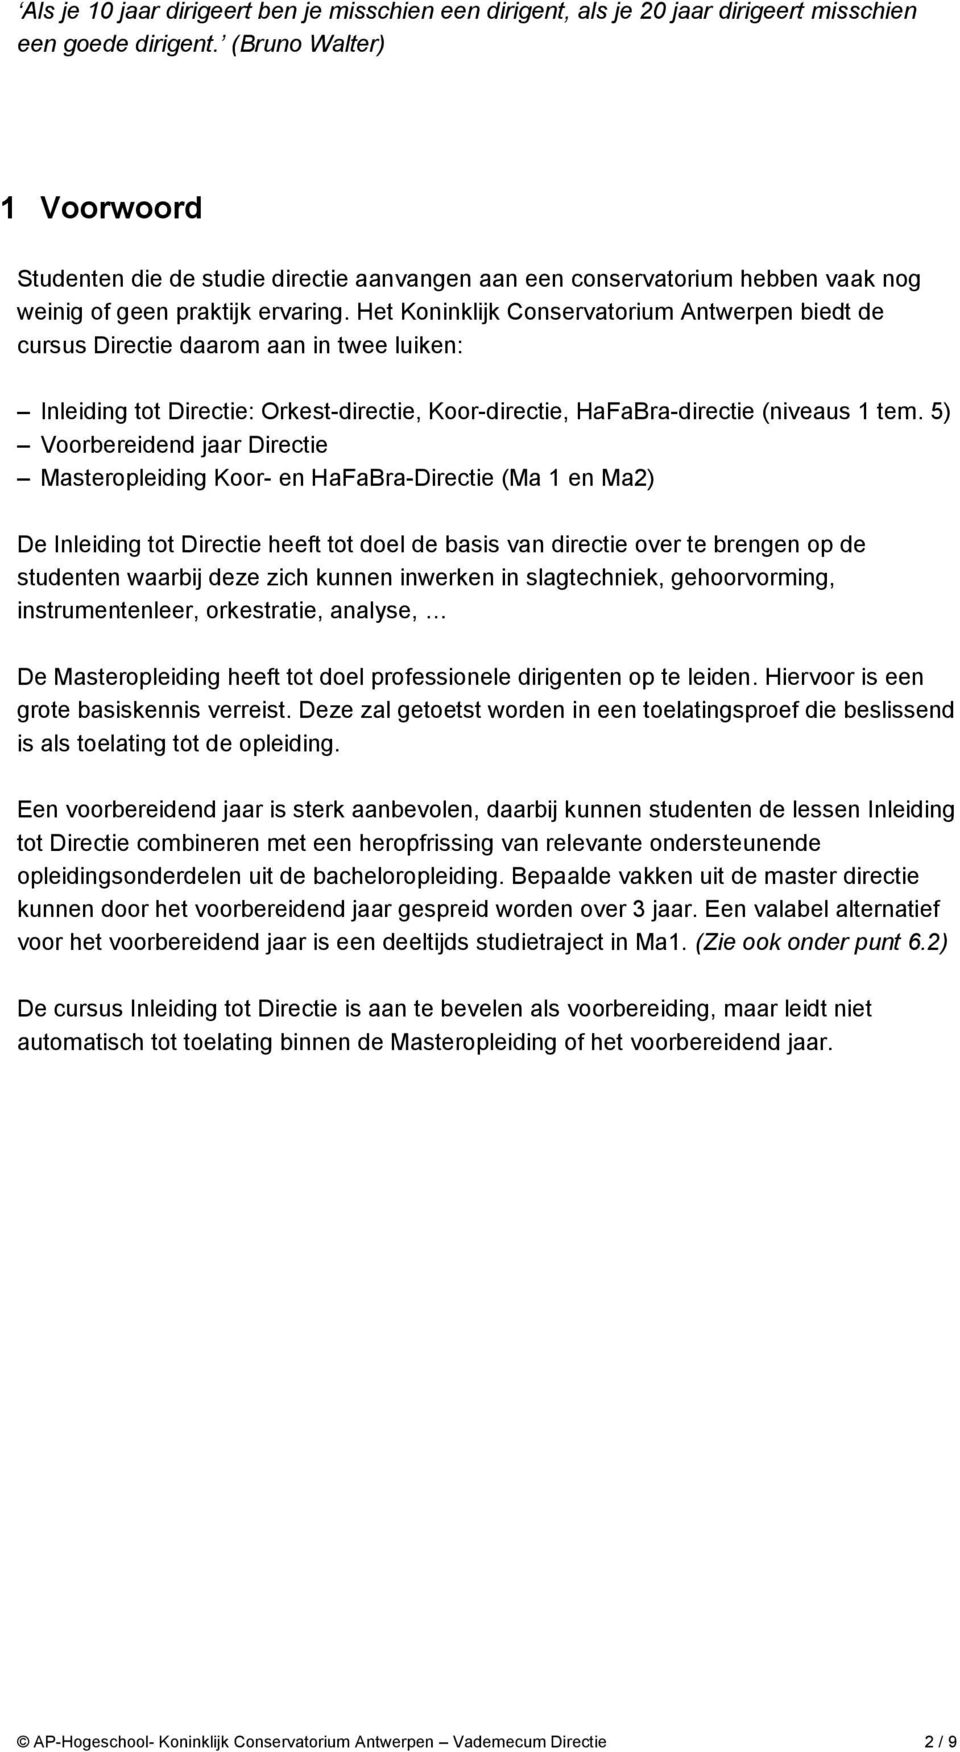 Het Koninklijk Conservatorium Antwerpen biedt de cursus Directie daarom aan in twee luiken: Inleiding tot Directie: Orkest-directie, Koor-directie, HaFaBra-directie (niveaus 1 tem.